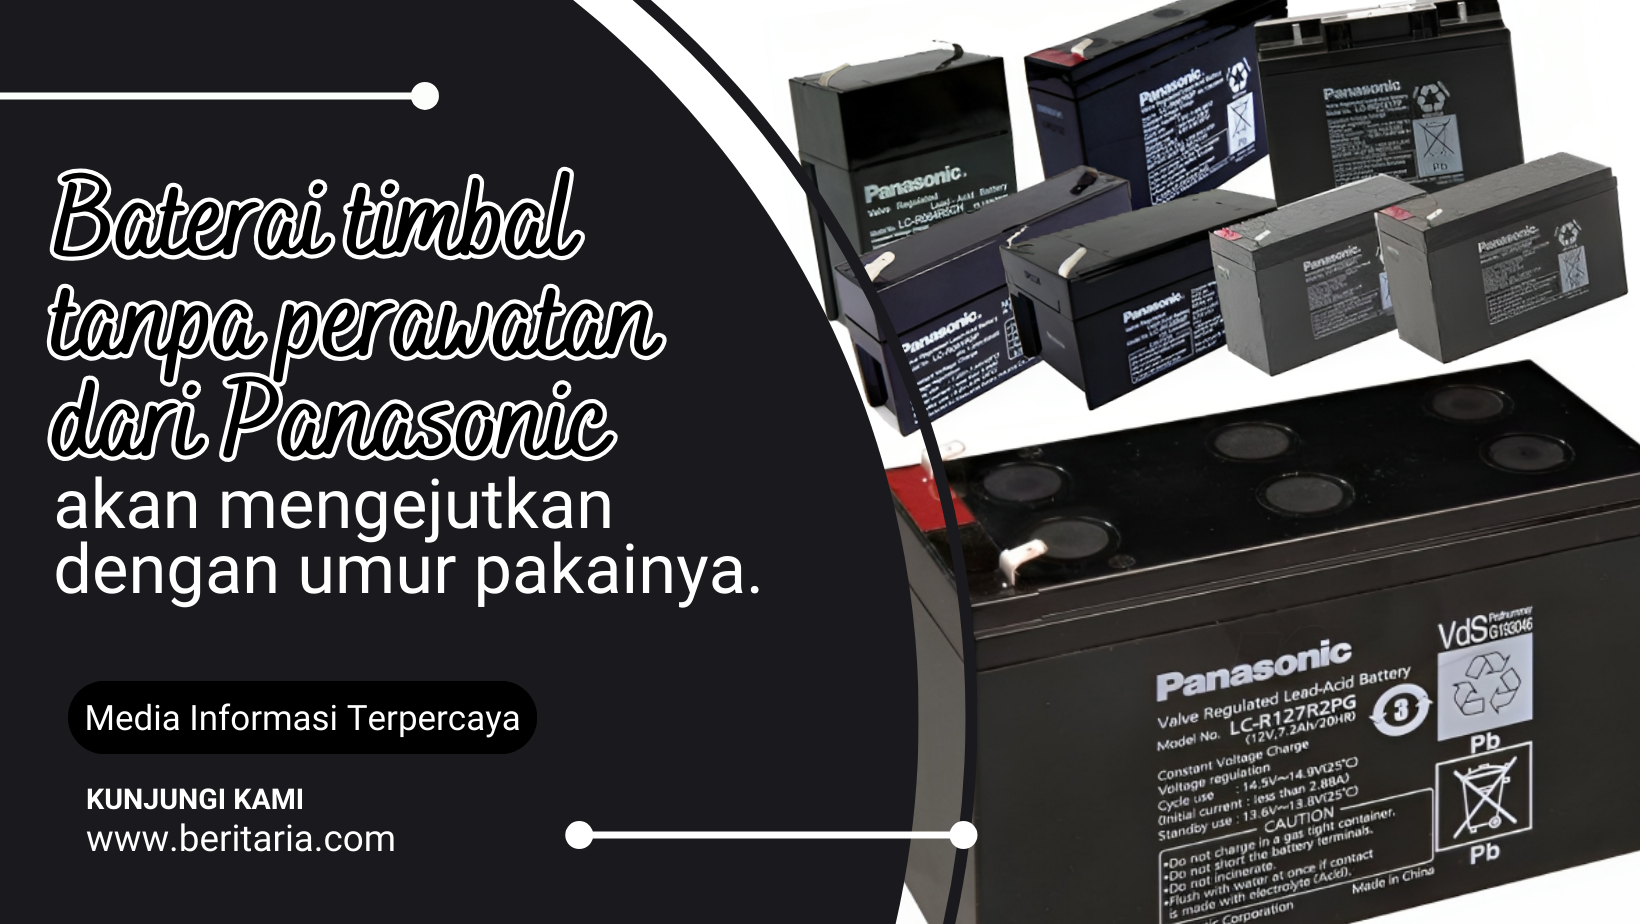 Beritaria.com | Baterai timbal tanpa perawatan dari Panasonic akan mengejutkan dengan umur pakainya.